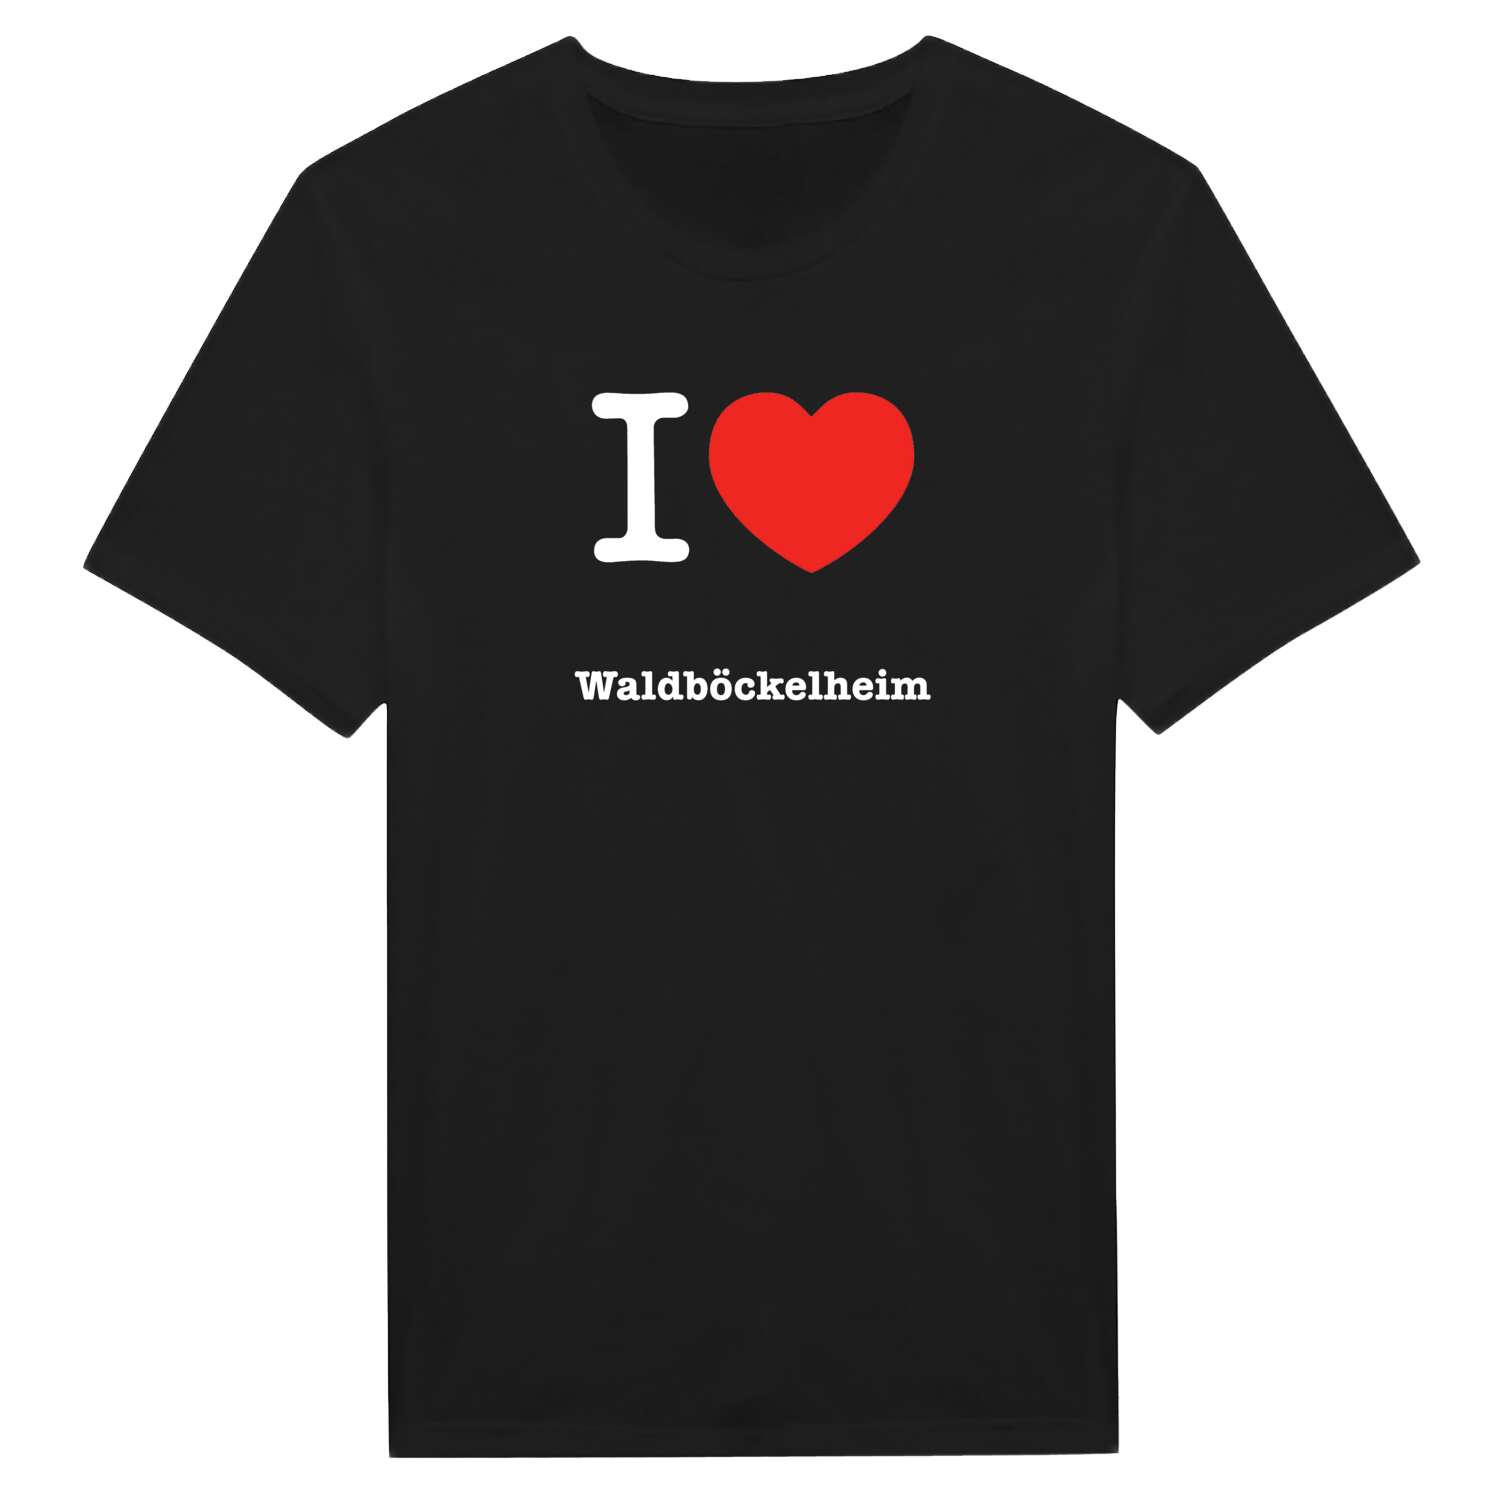 Waldböckelheim T-Shirt »I love«